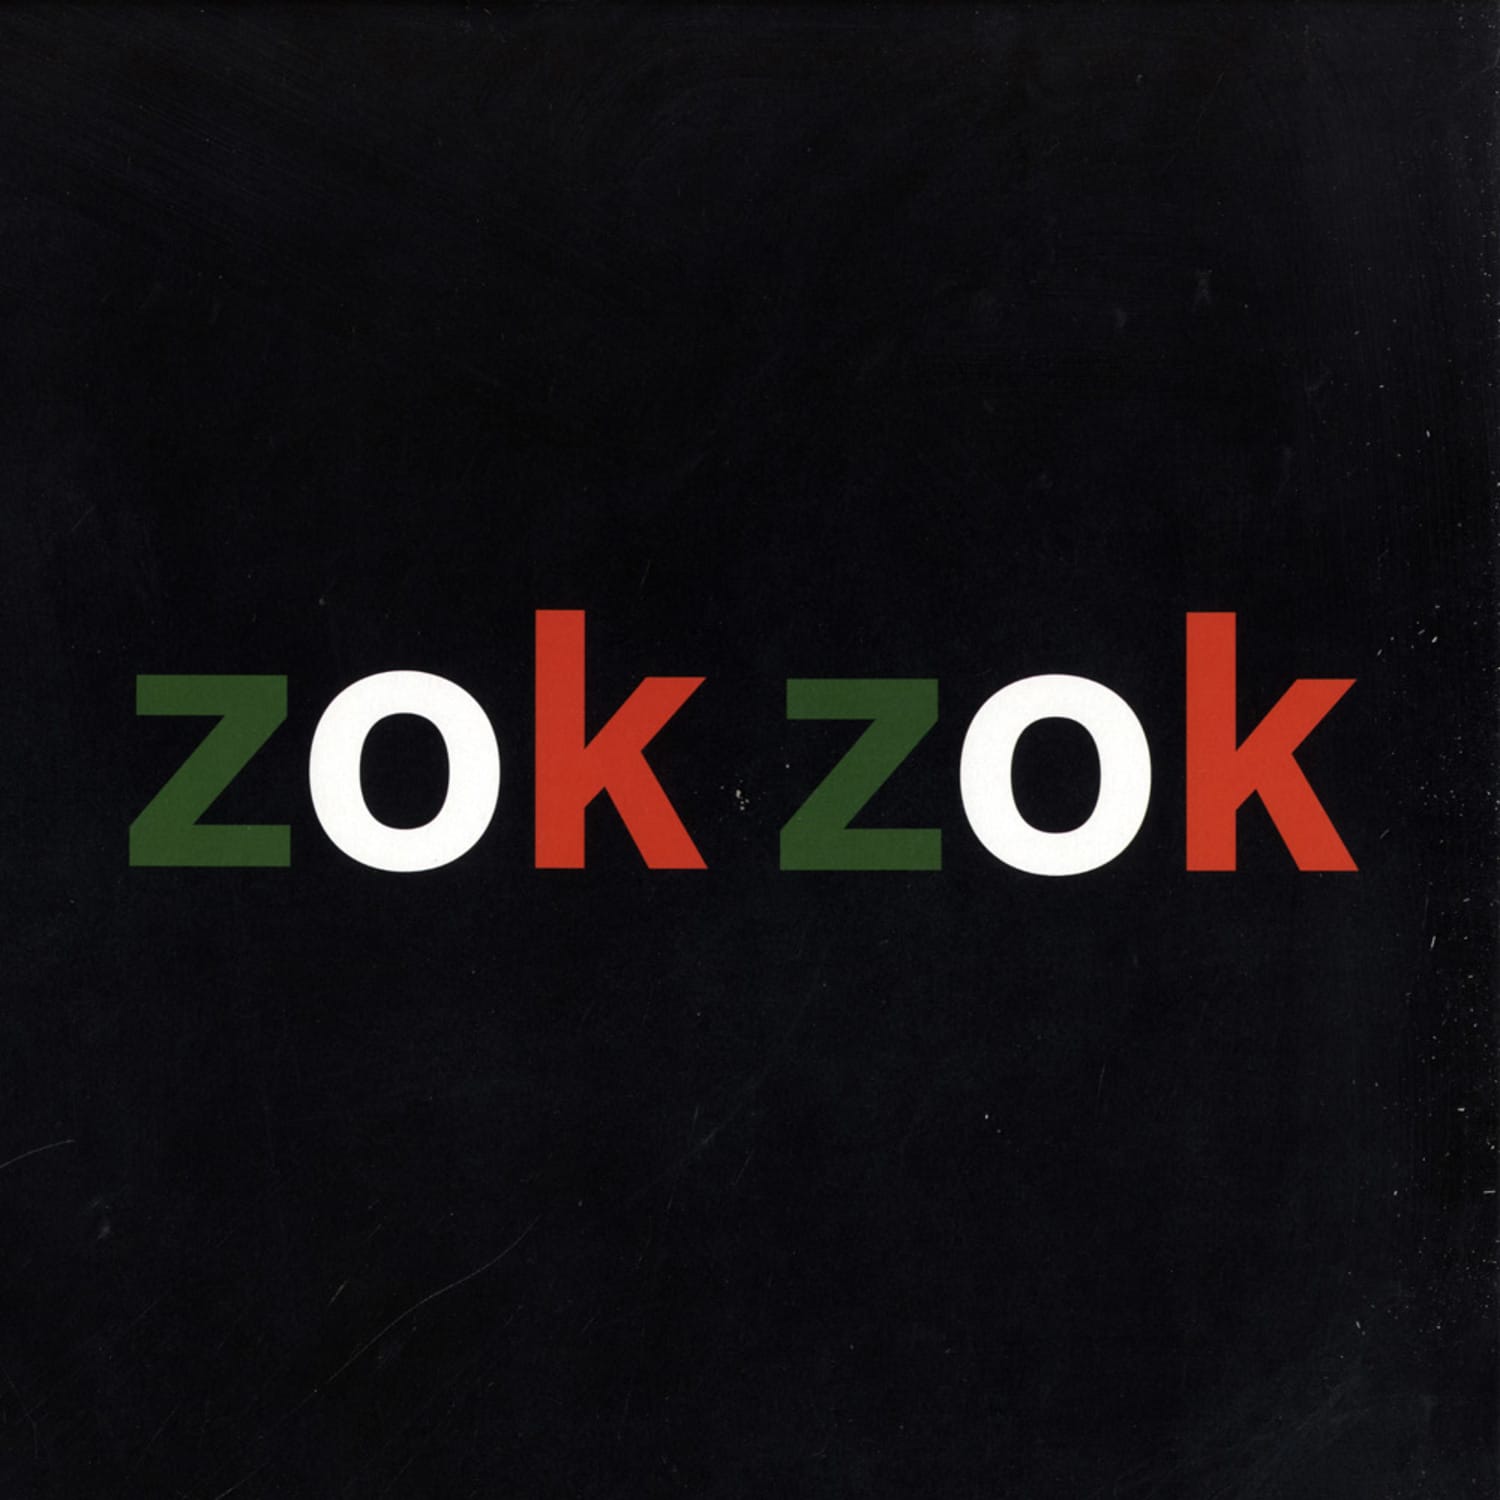 Zokzok - No 7